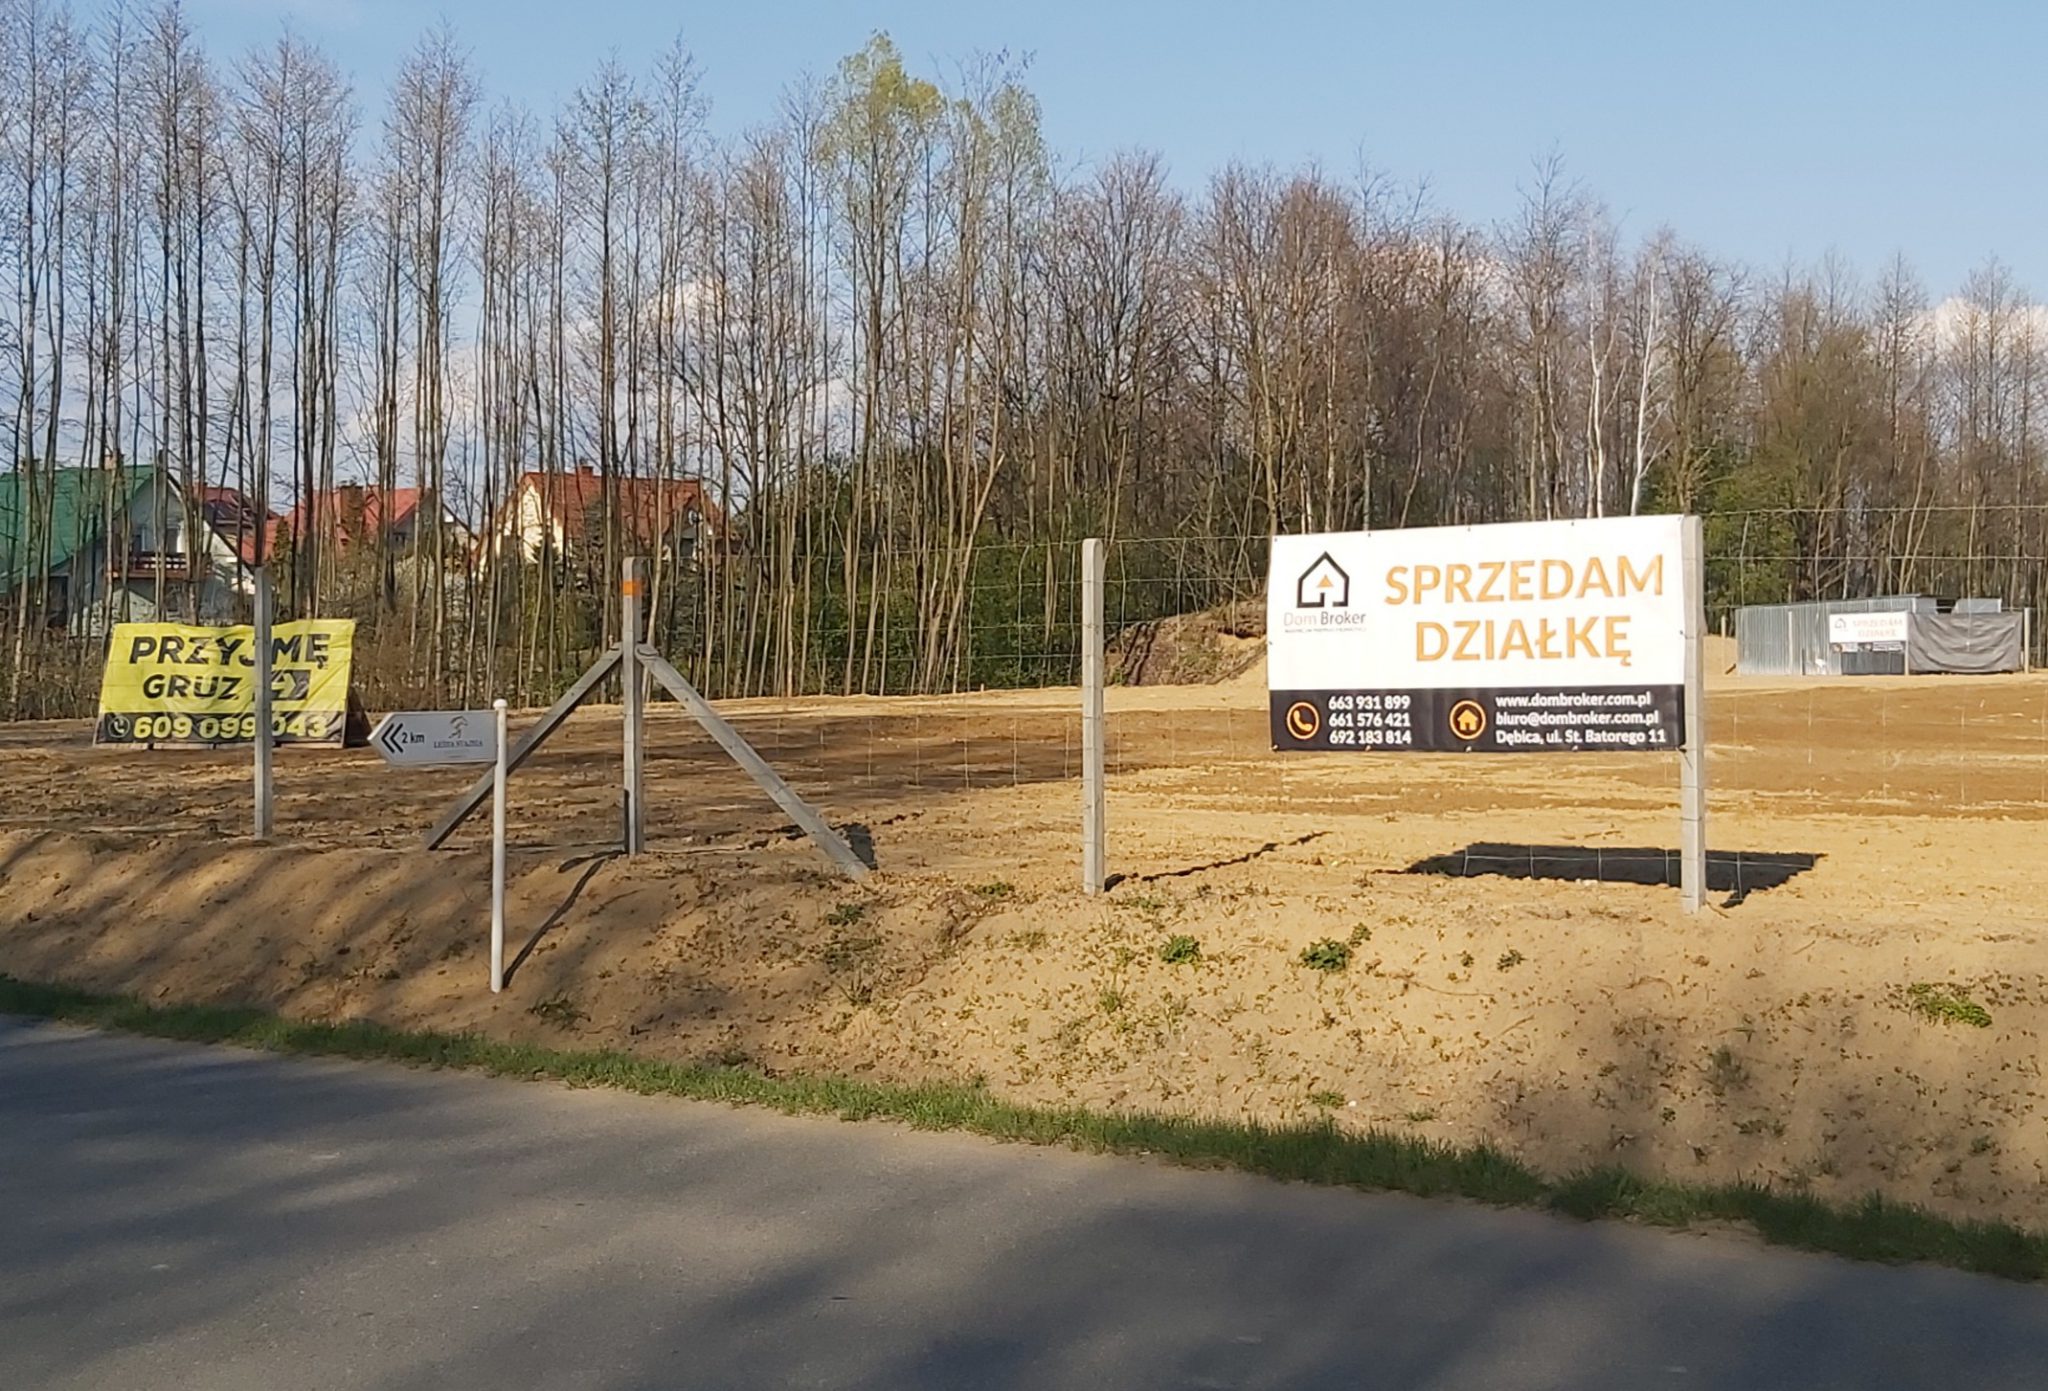 Działka budowlana, Nagoszyn, 10ar, warunki zabudowy